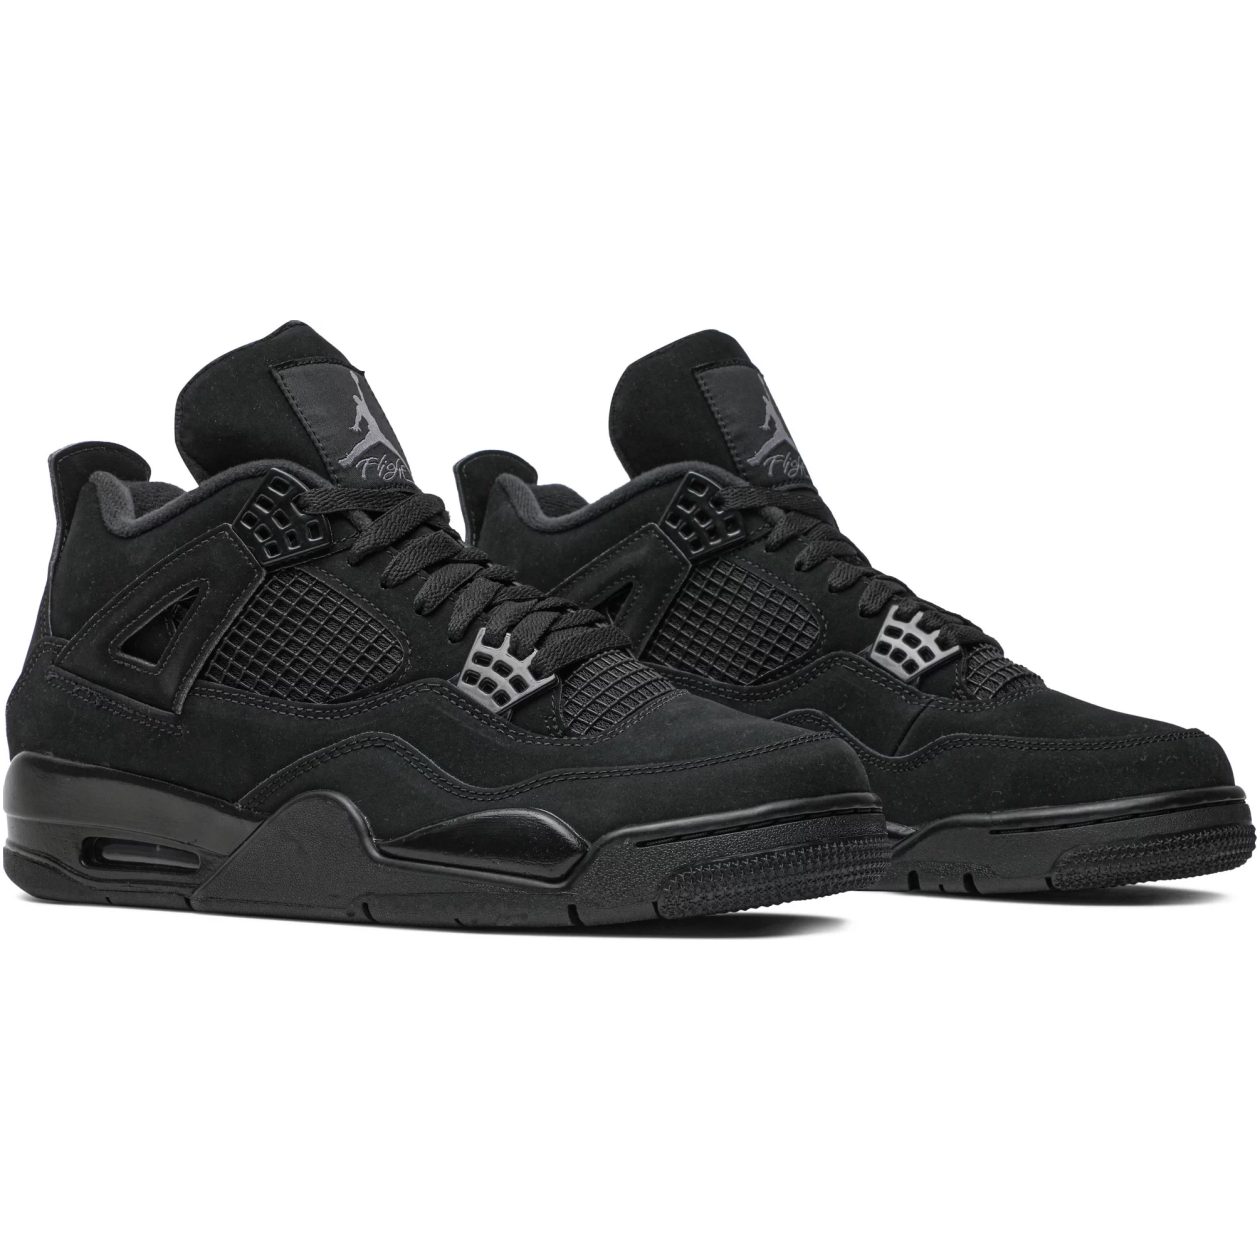 Air Jordan 4 Retro Black Cat (2020) – Sneakers Joint